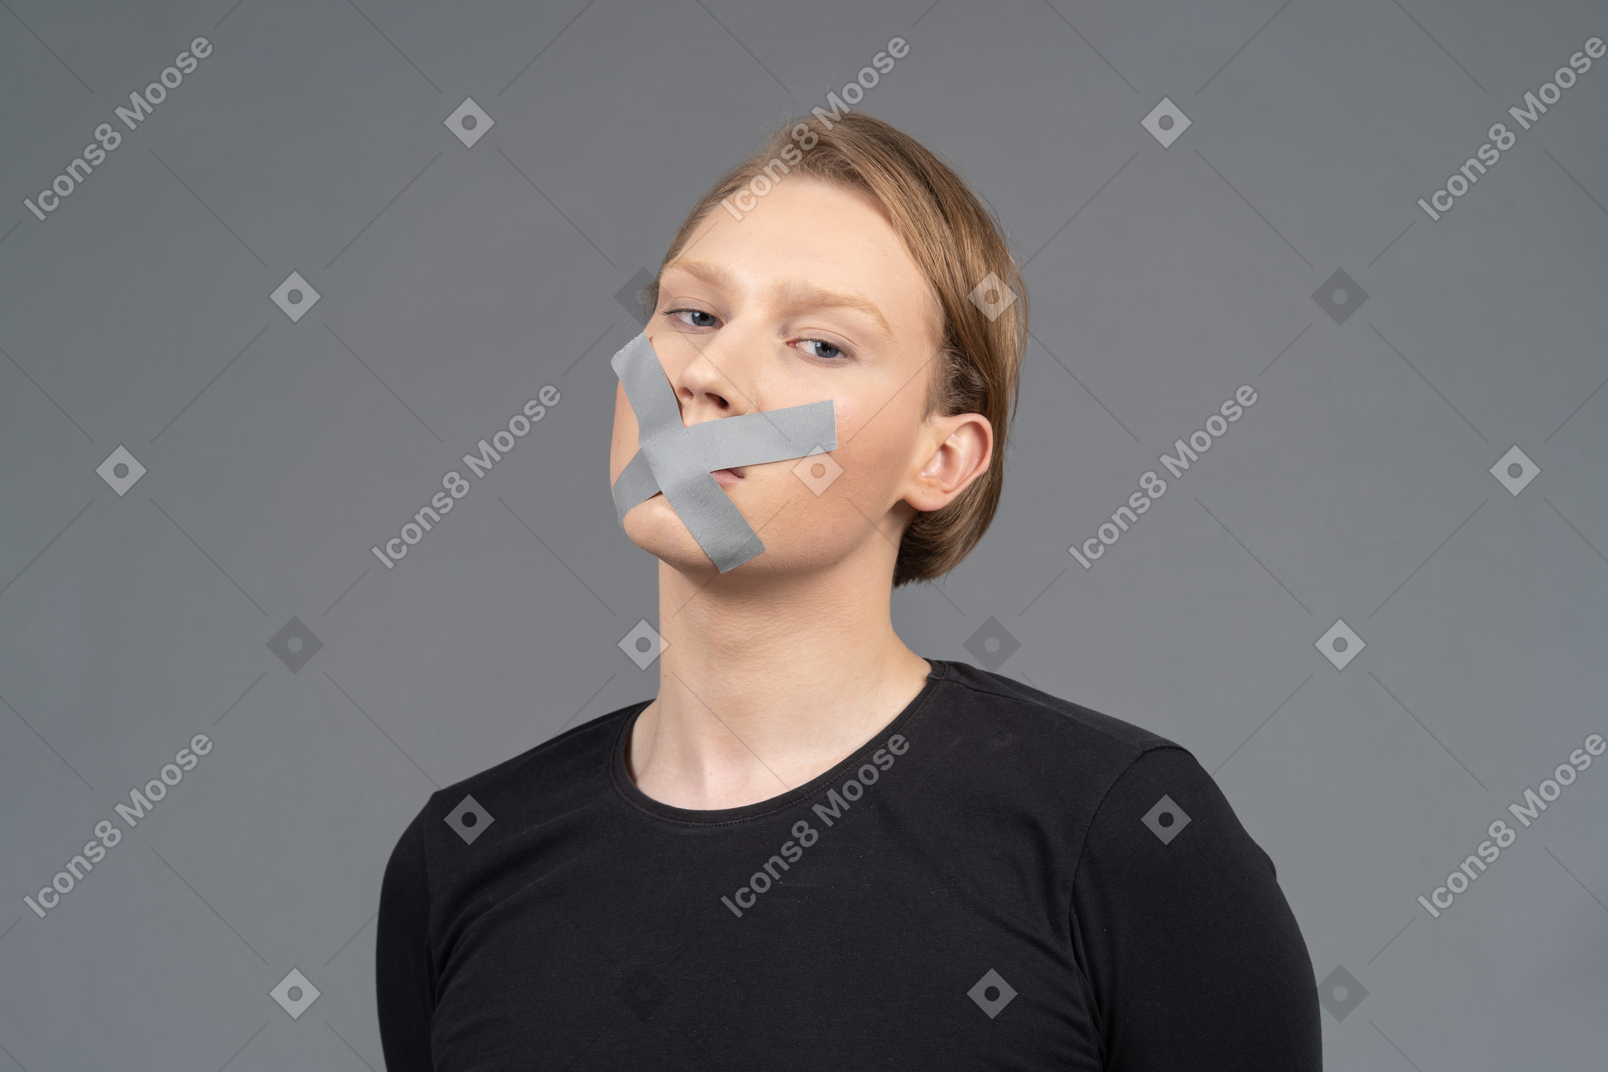 Vista de tres cuartos de la persona con cinta adhesiva en la boca